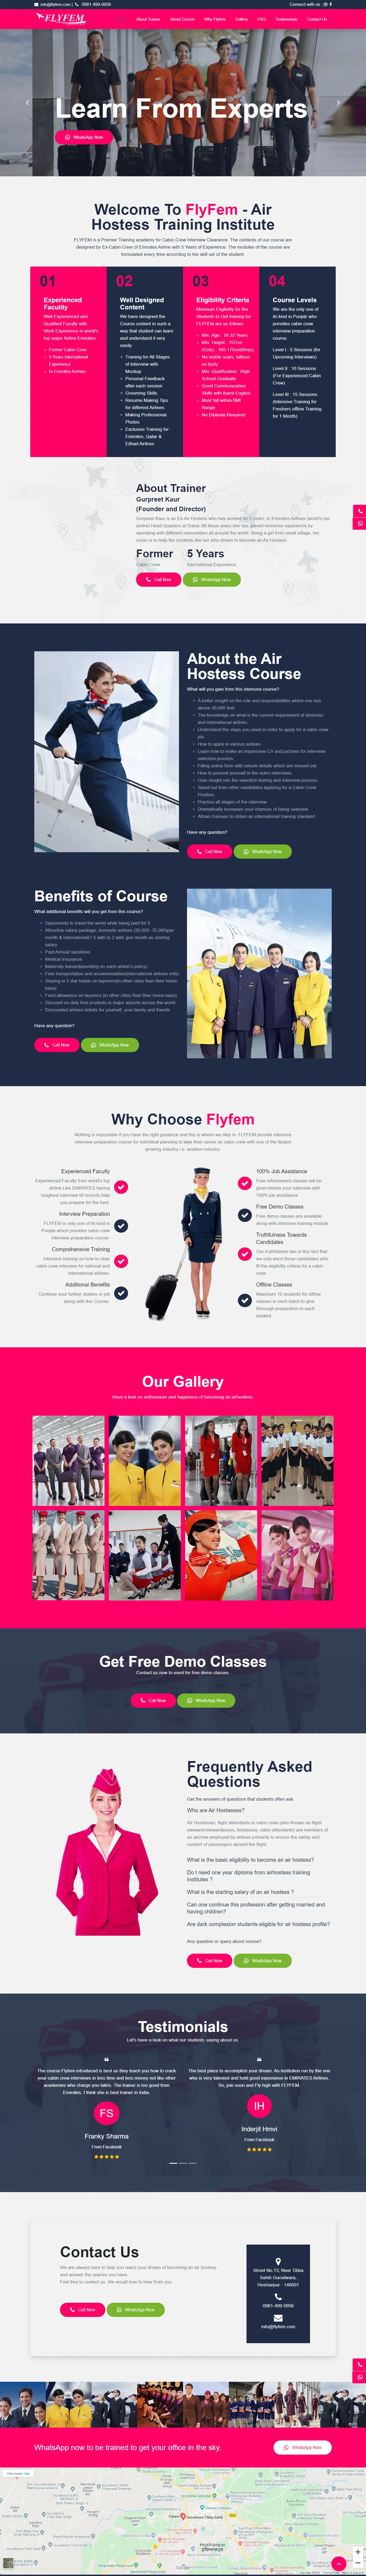 flyfem website image